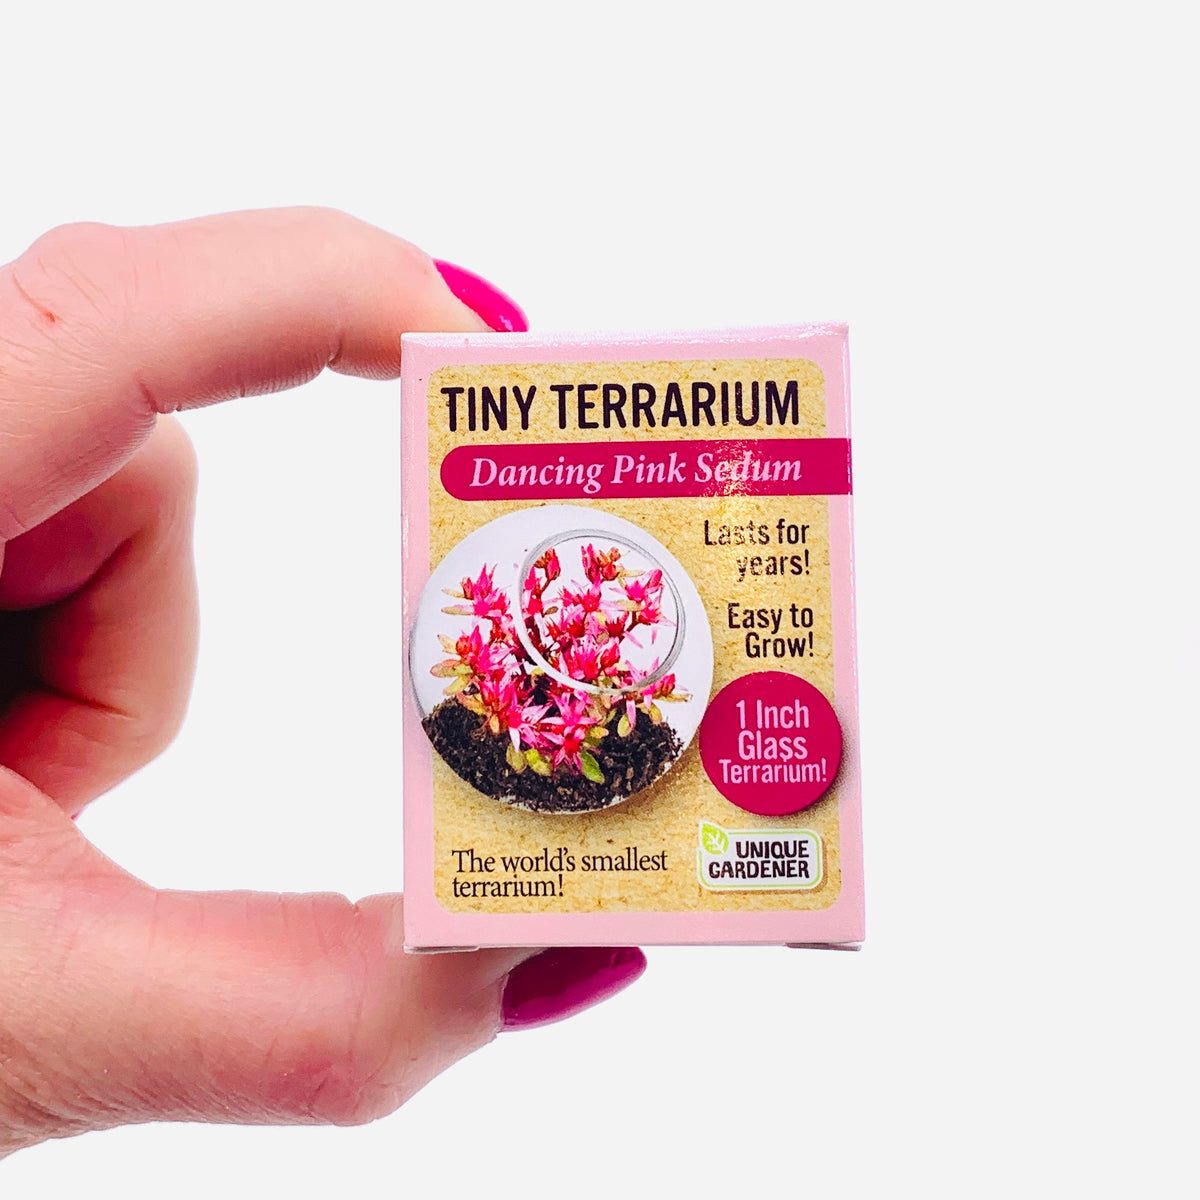 Tiny Terrarium, Dancing Pink Sedum